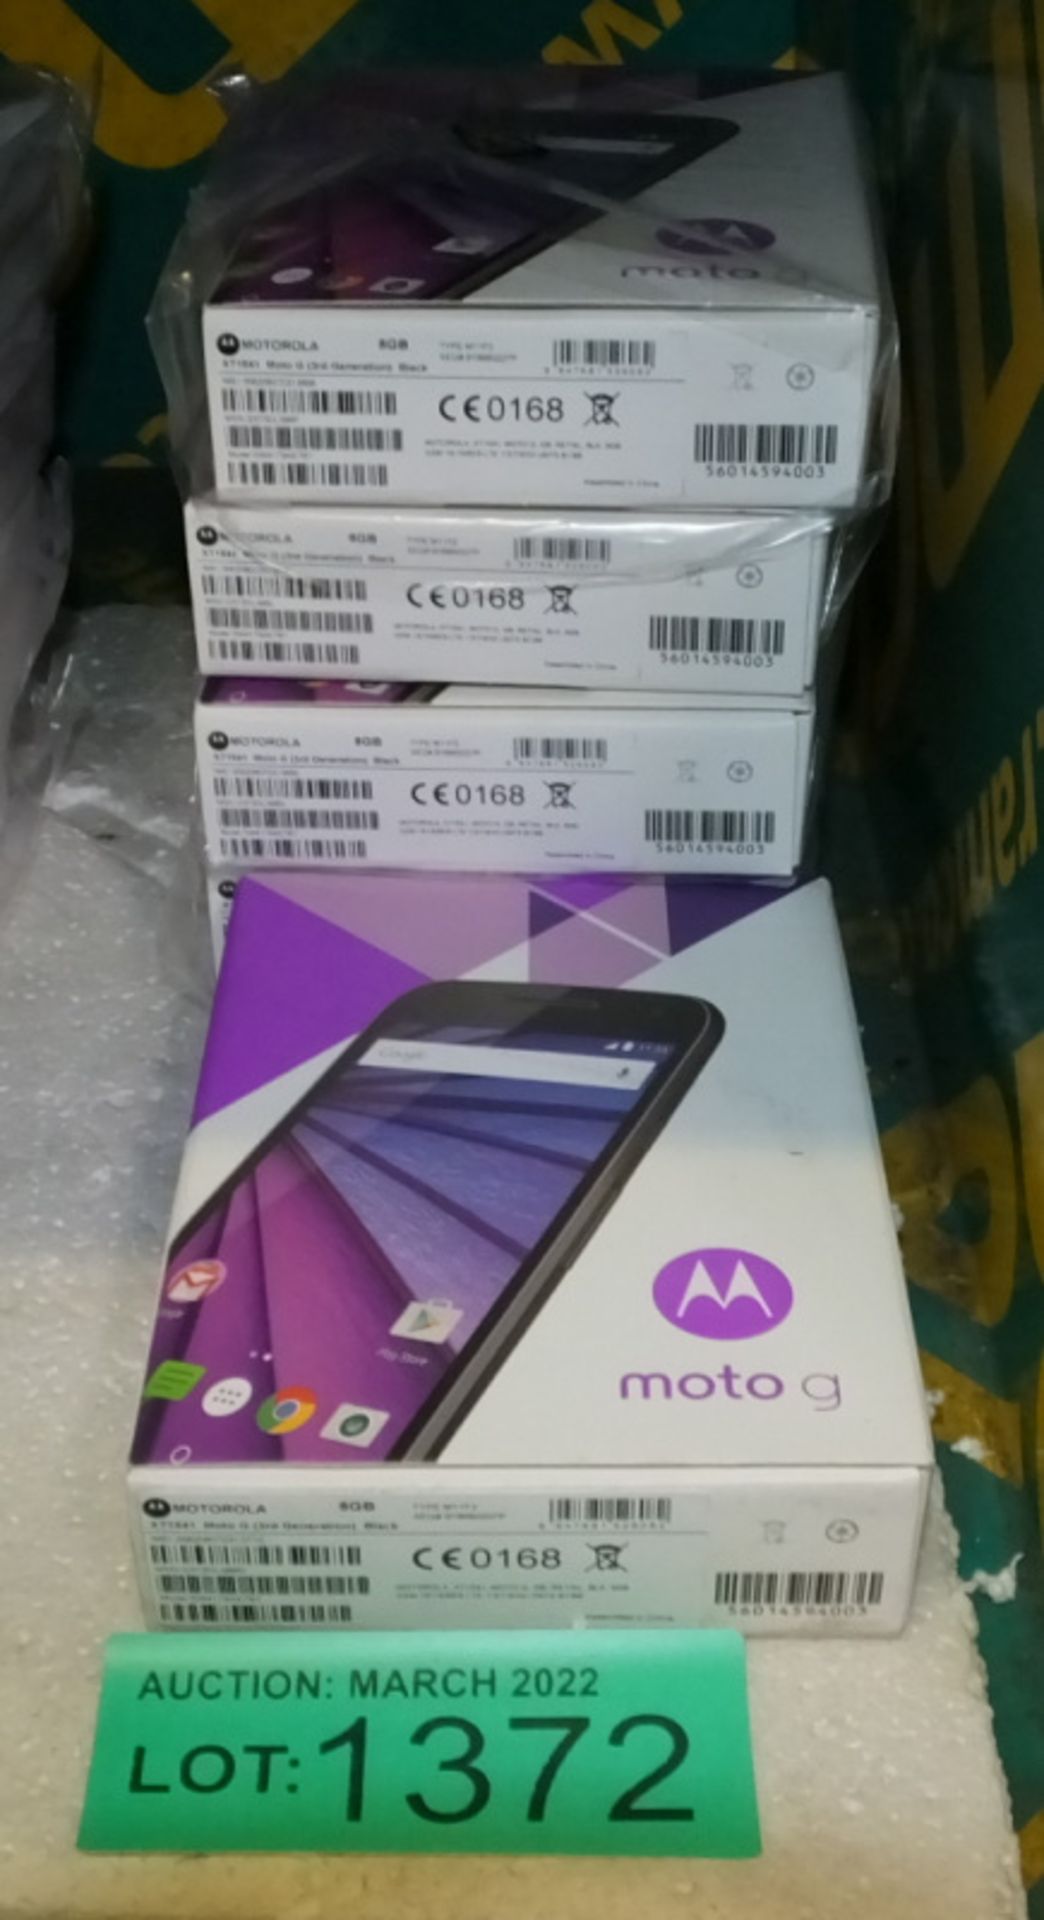 5x Motorola XT1541 Moto G (3rd Generation)